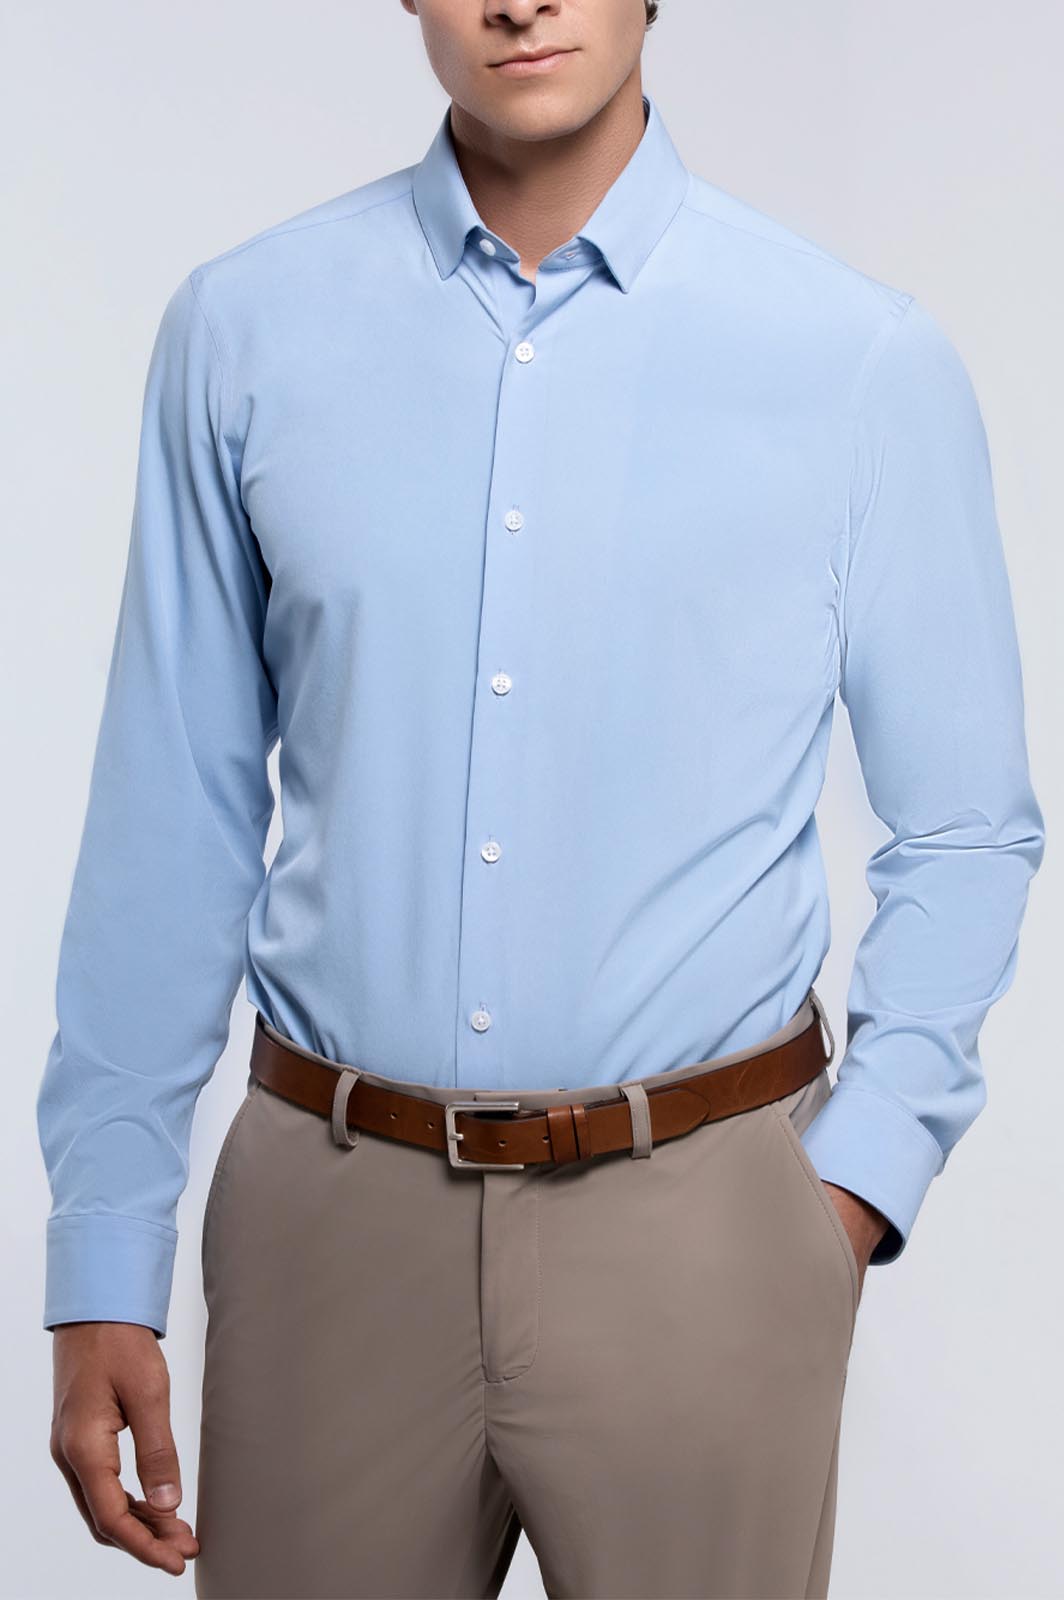 Men's Light Blue Long Sleeve Dress Shirt - XL - State of Matter Apparel